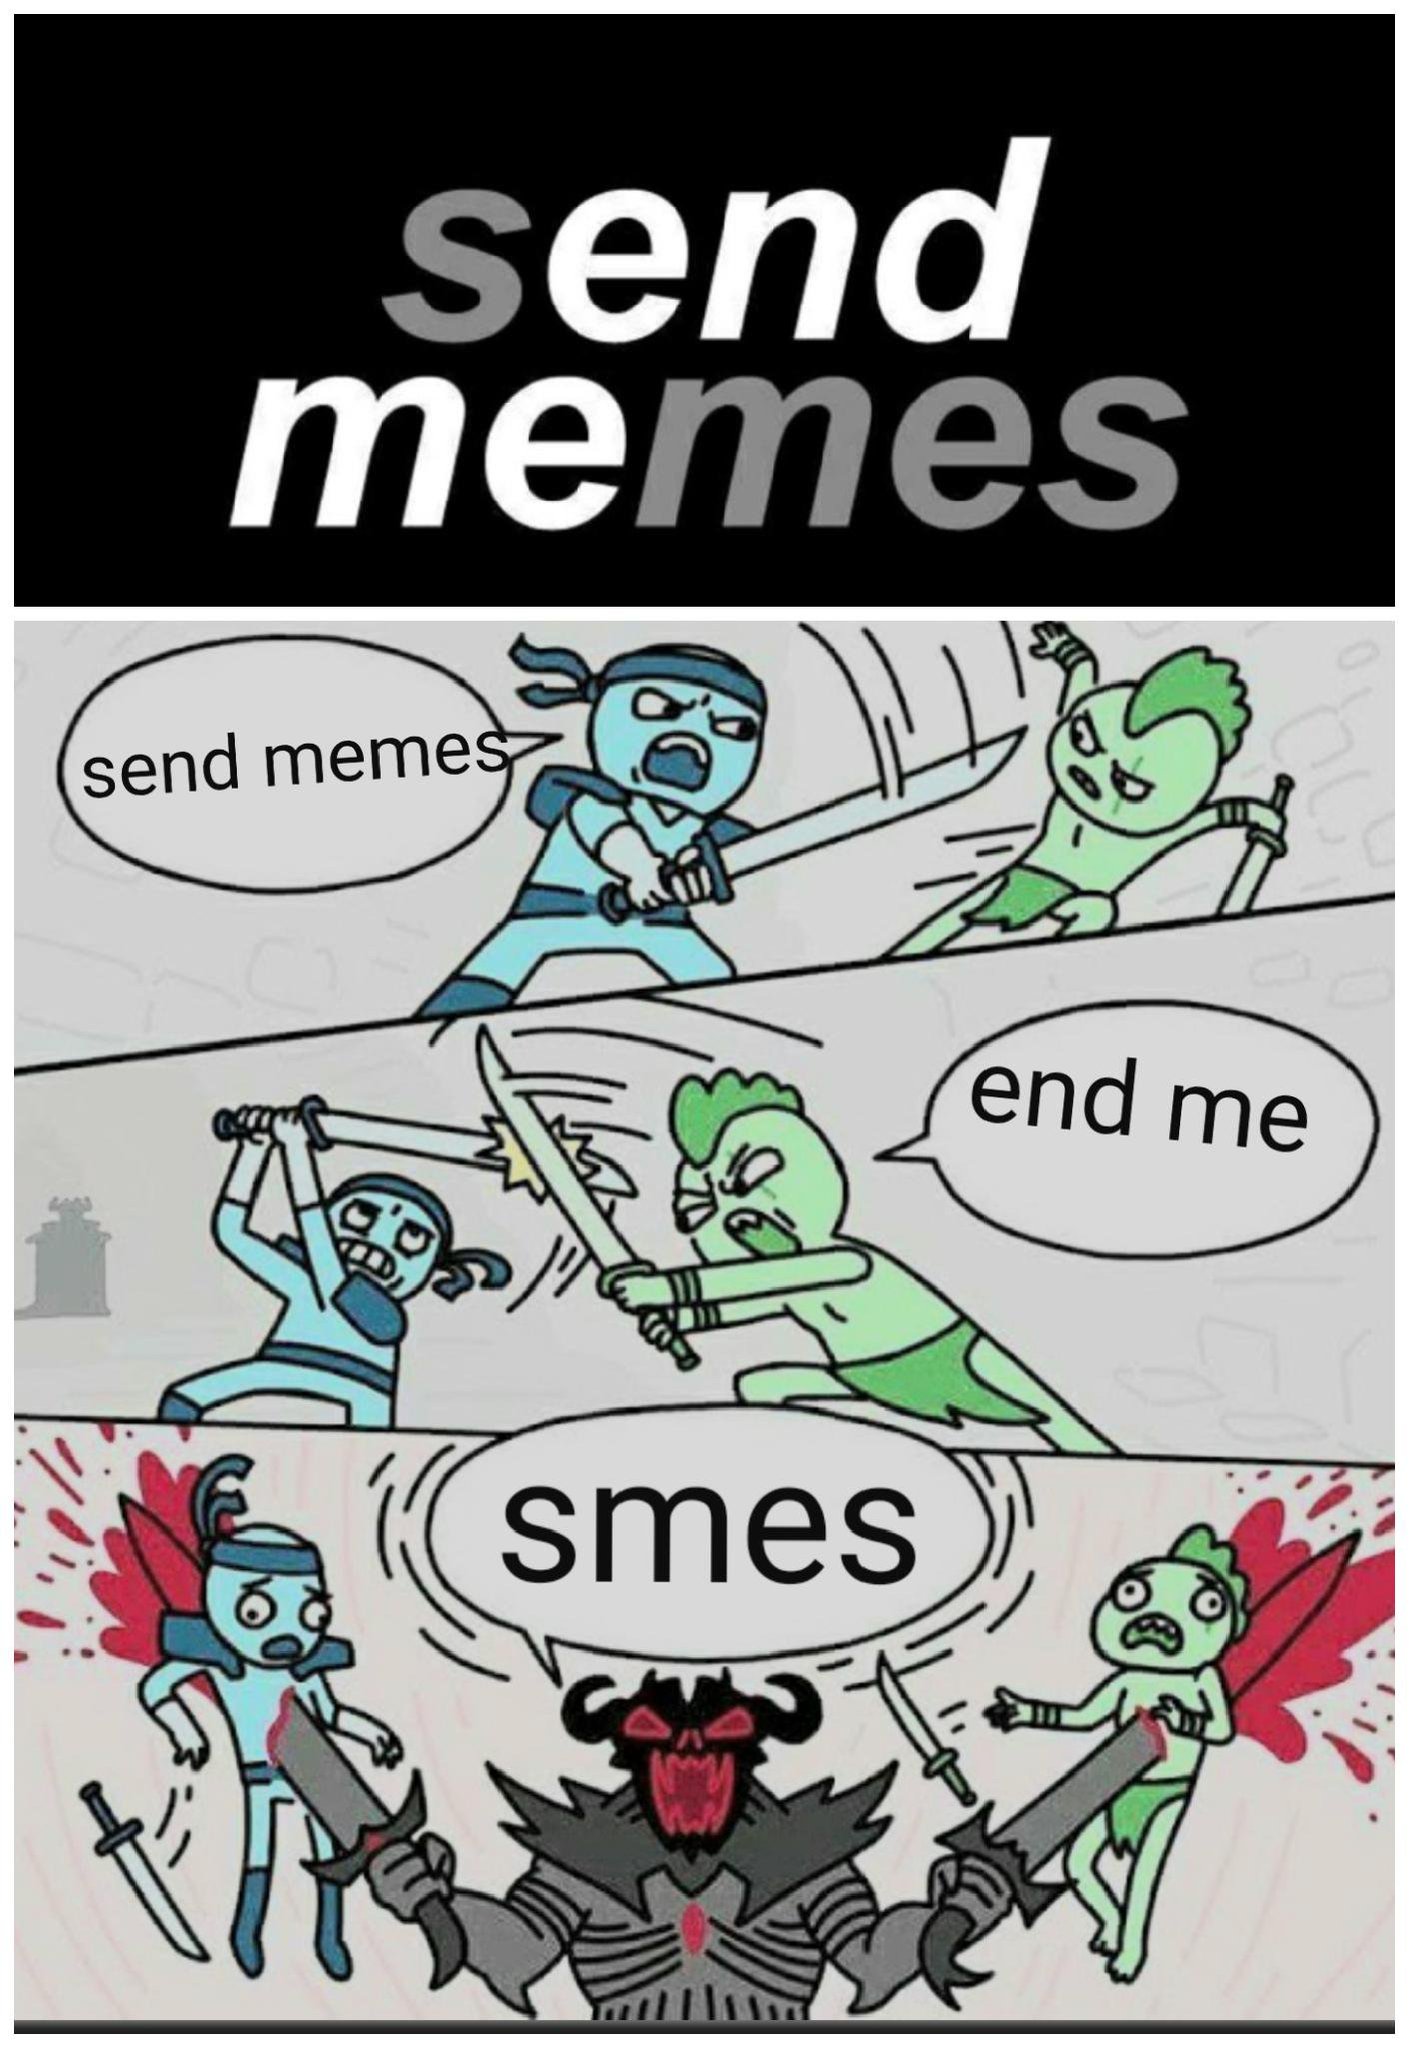 Send memes